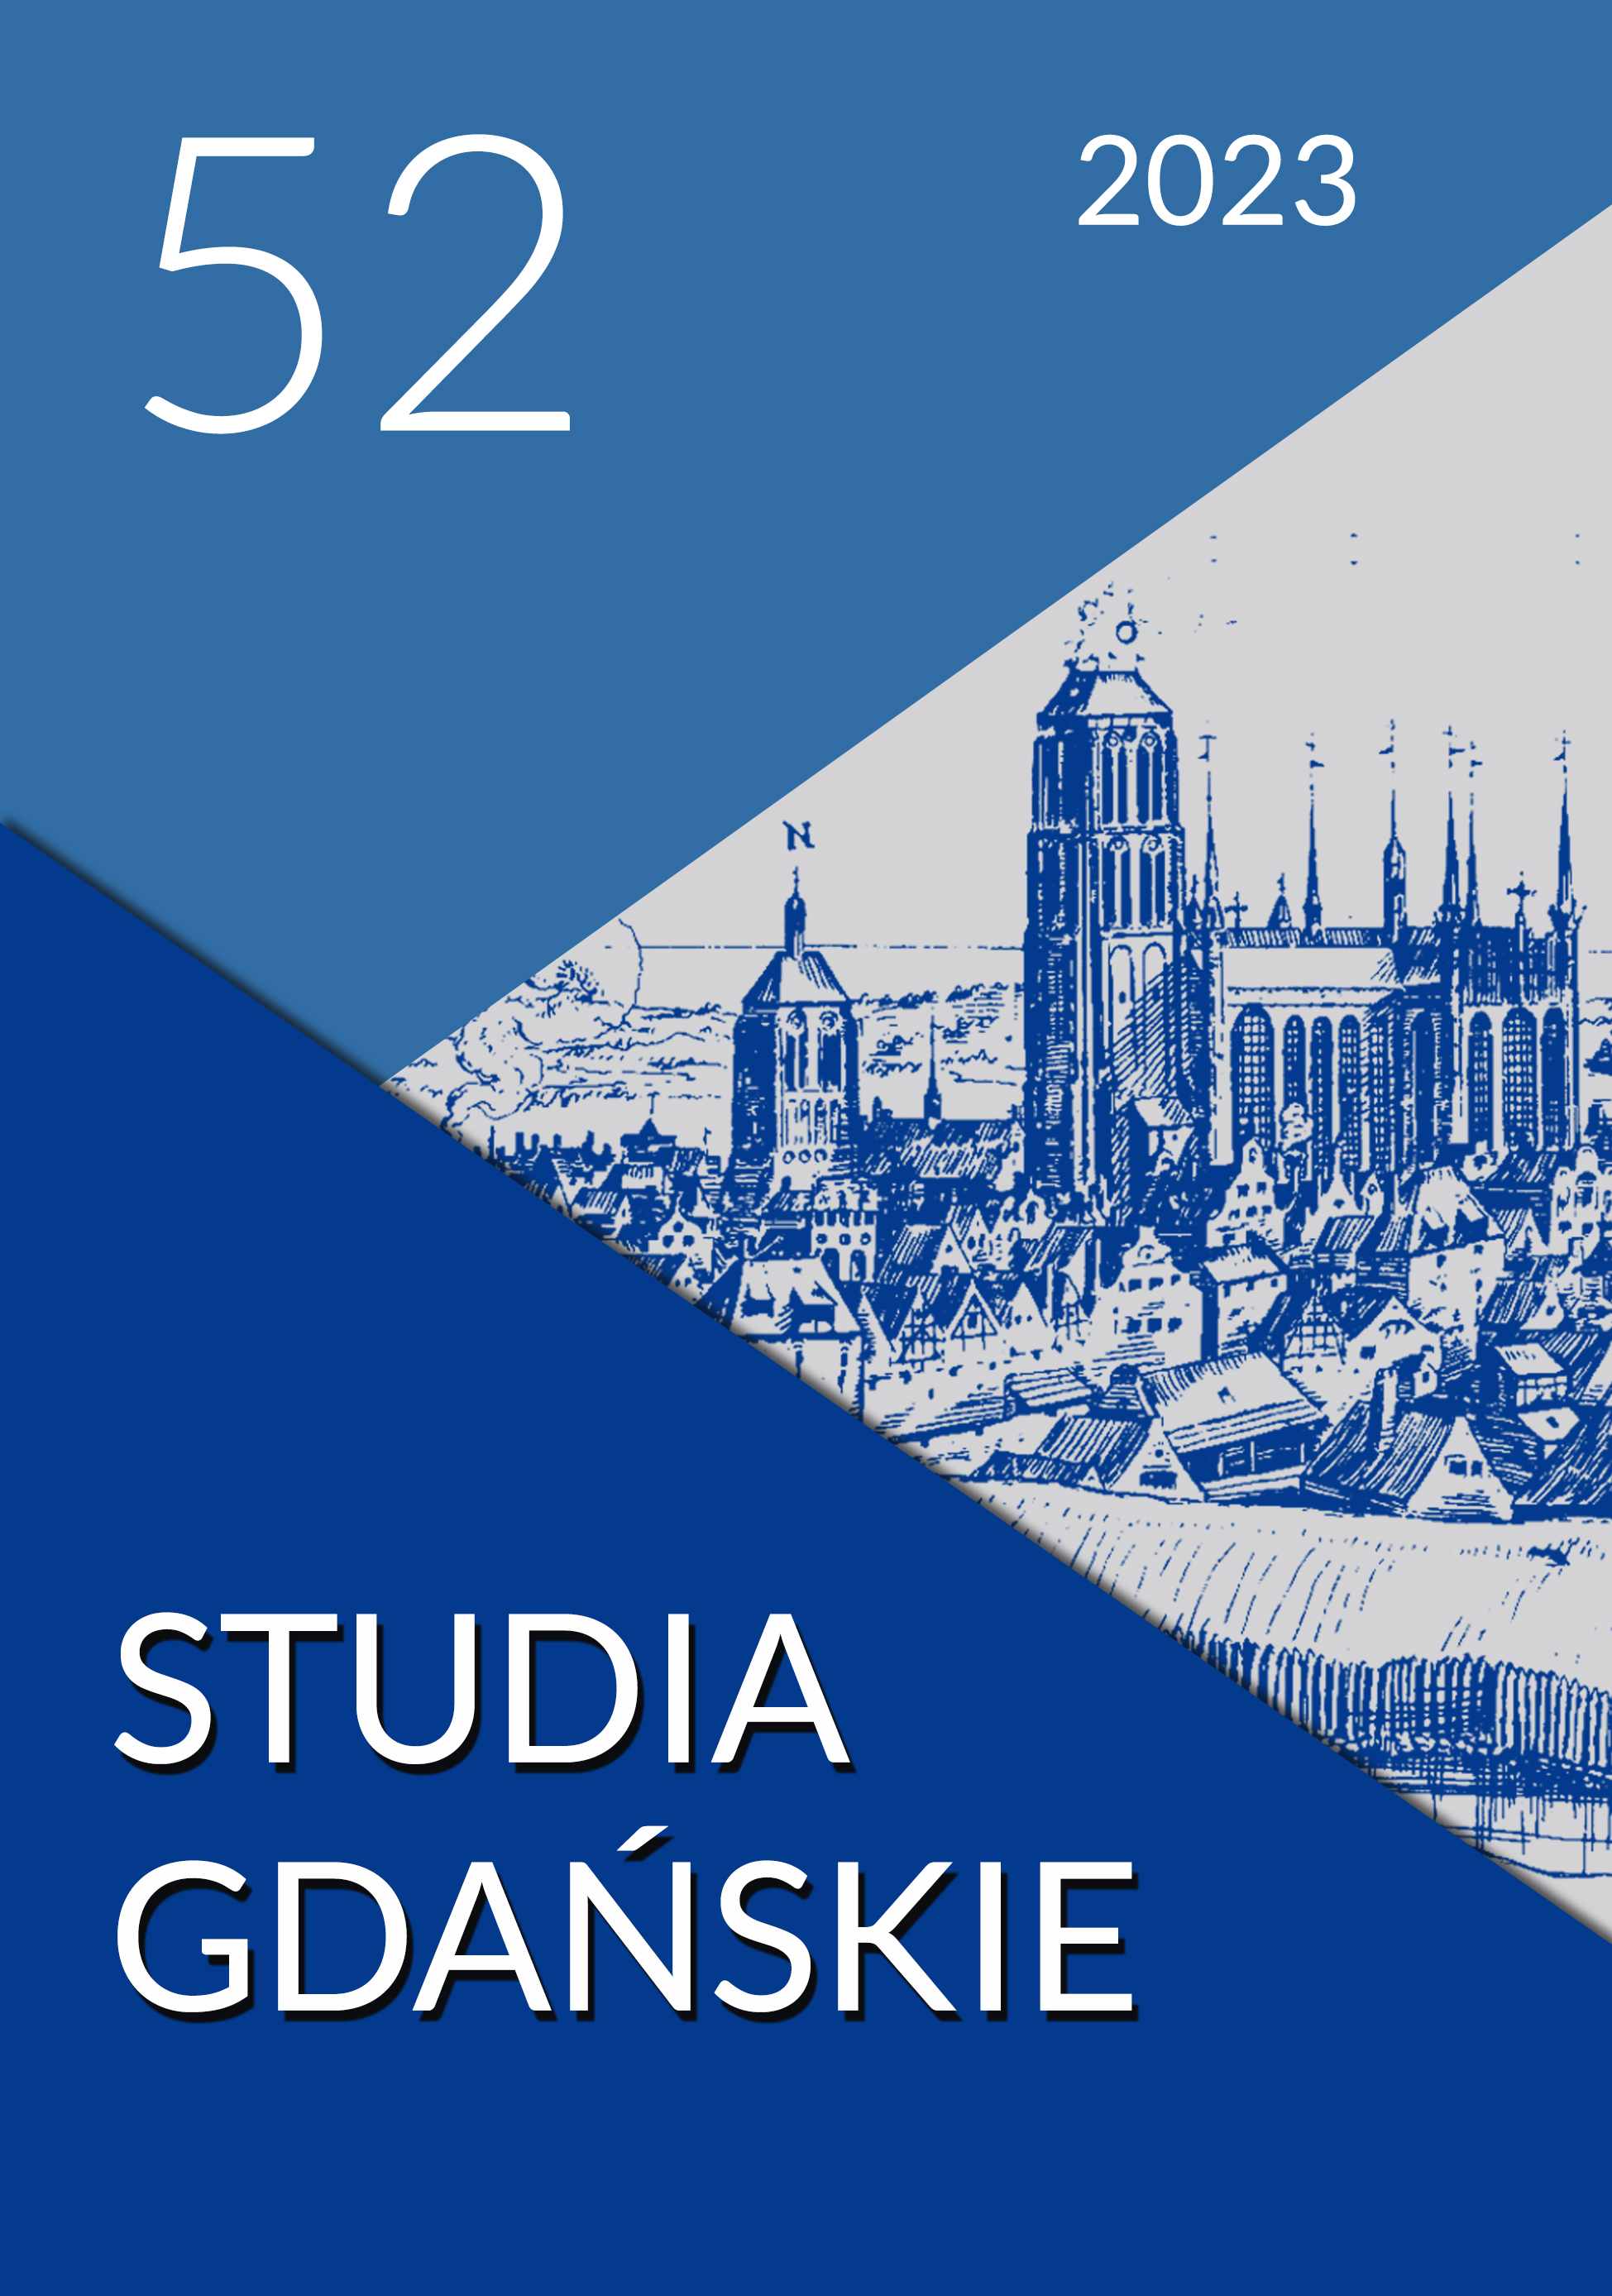 Piergiorgio Odifreddi, W poszukiwaniu prawdy, Esprit, Kraków 2023, s. 383. Cover Image